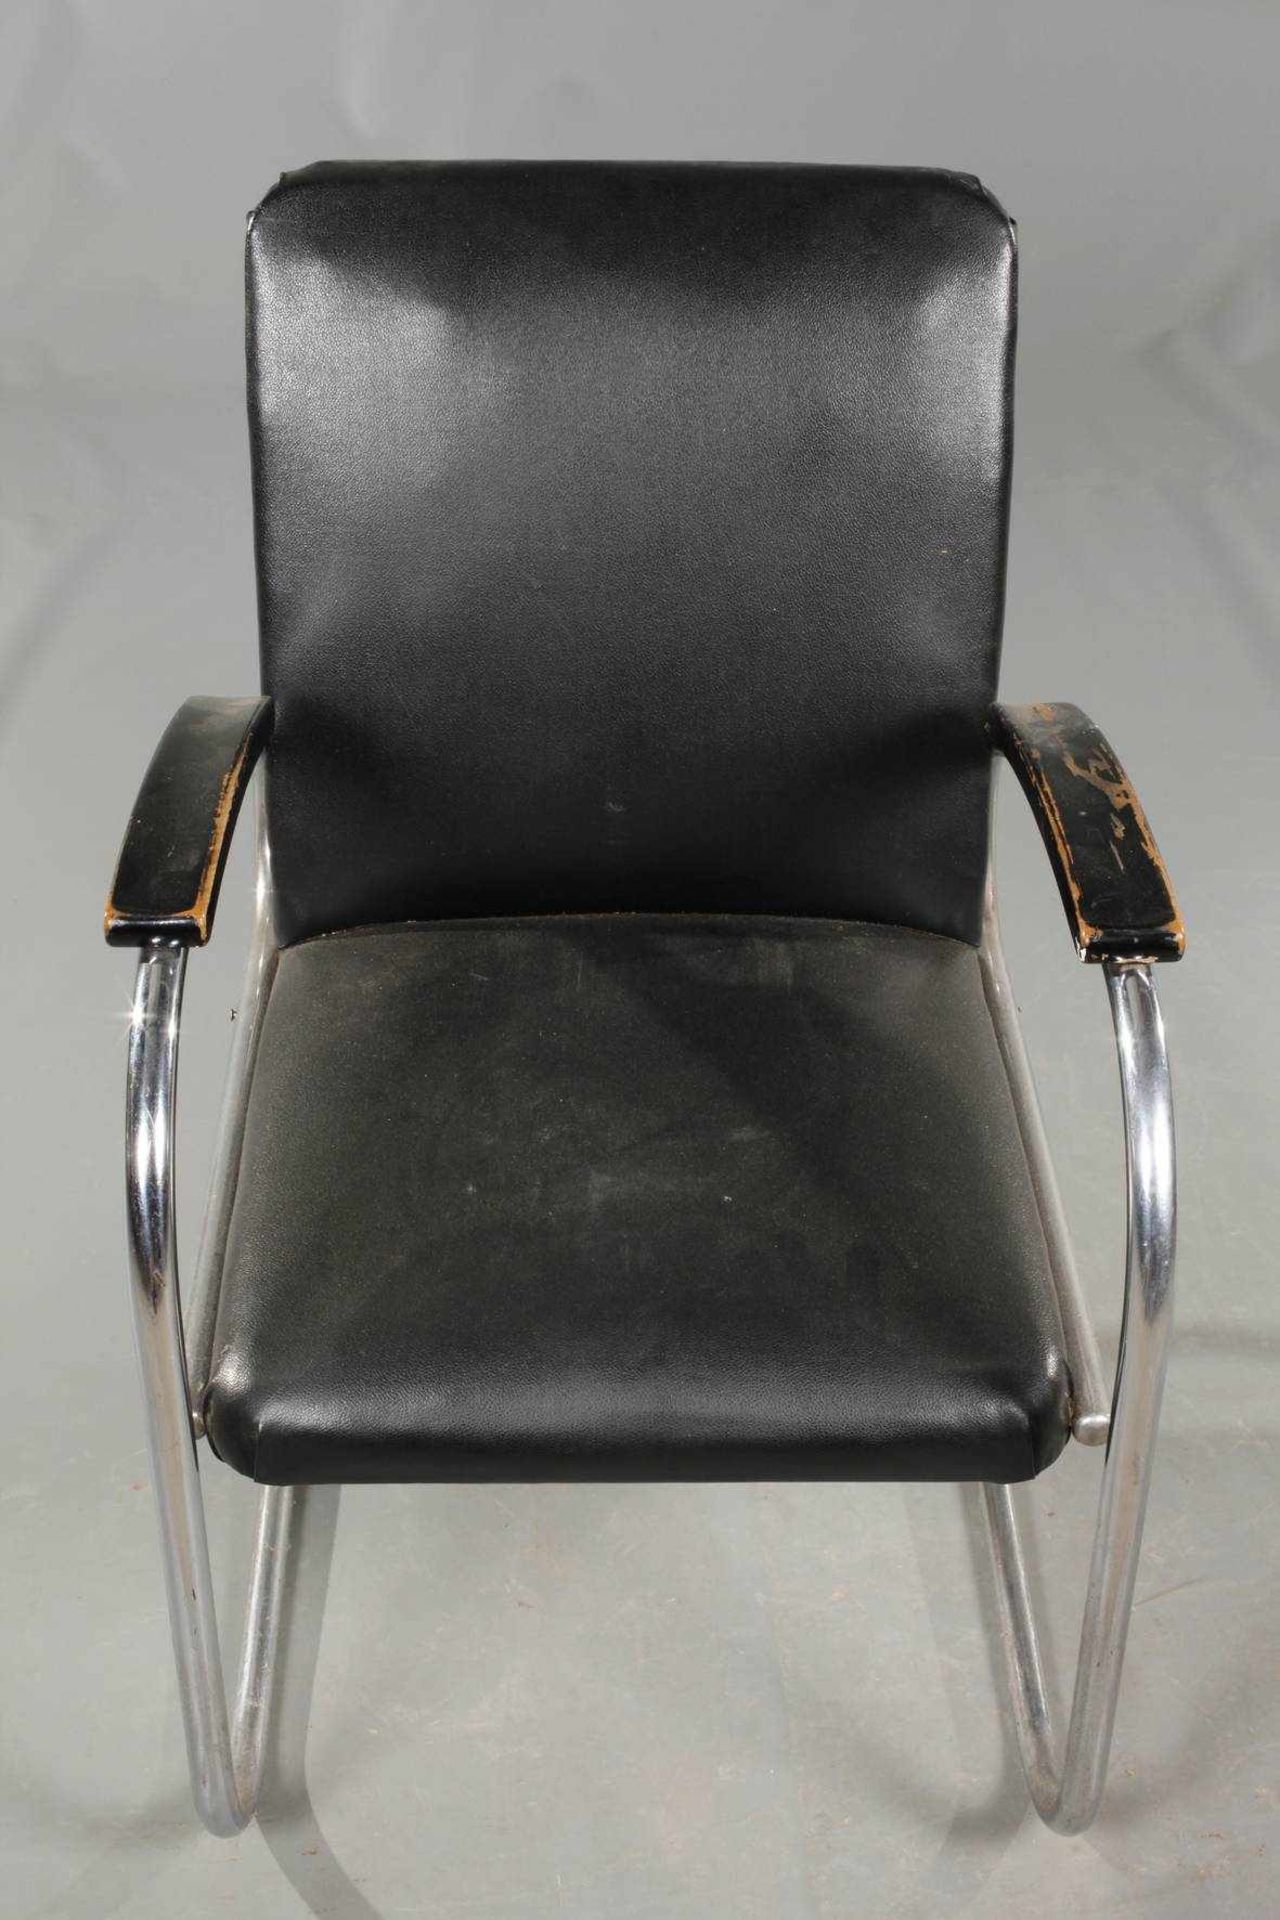 Stahlrohrsessel MauserModel RS27, 1950er Jahre, freischwingender Sessel mit Armlehnen, aus schwarz - Bild 2 aus 6